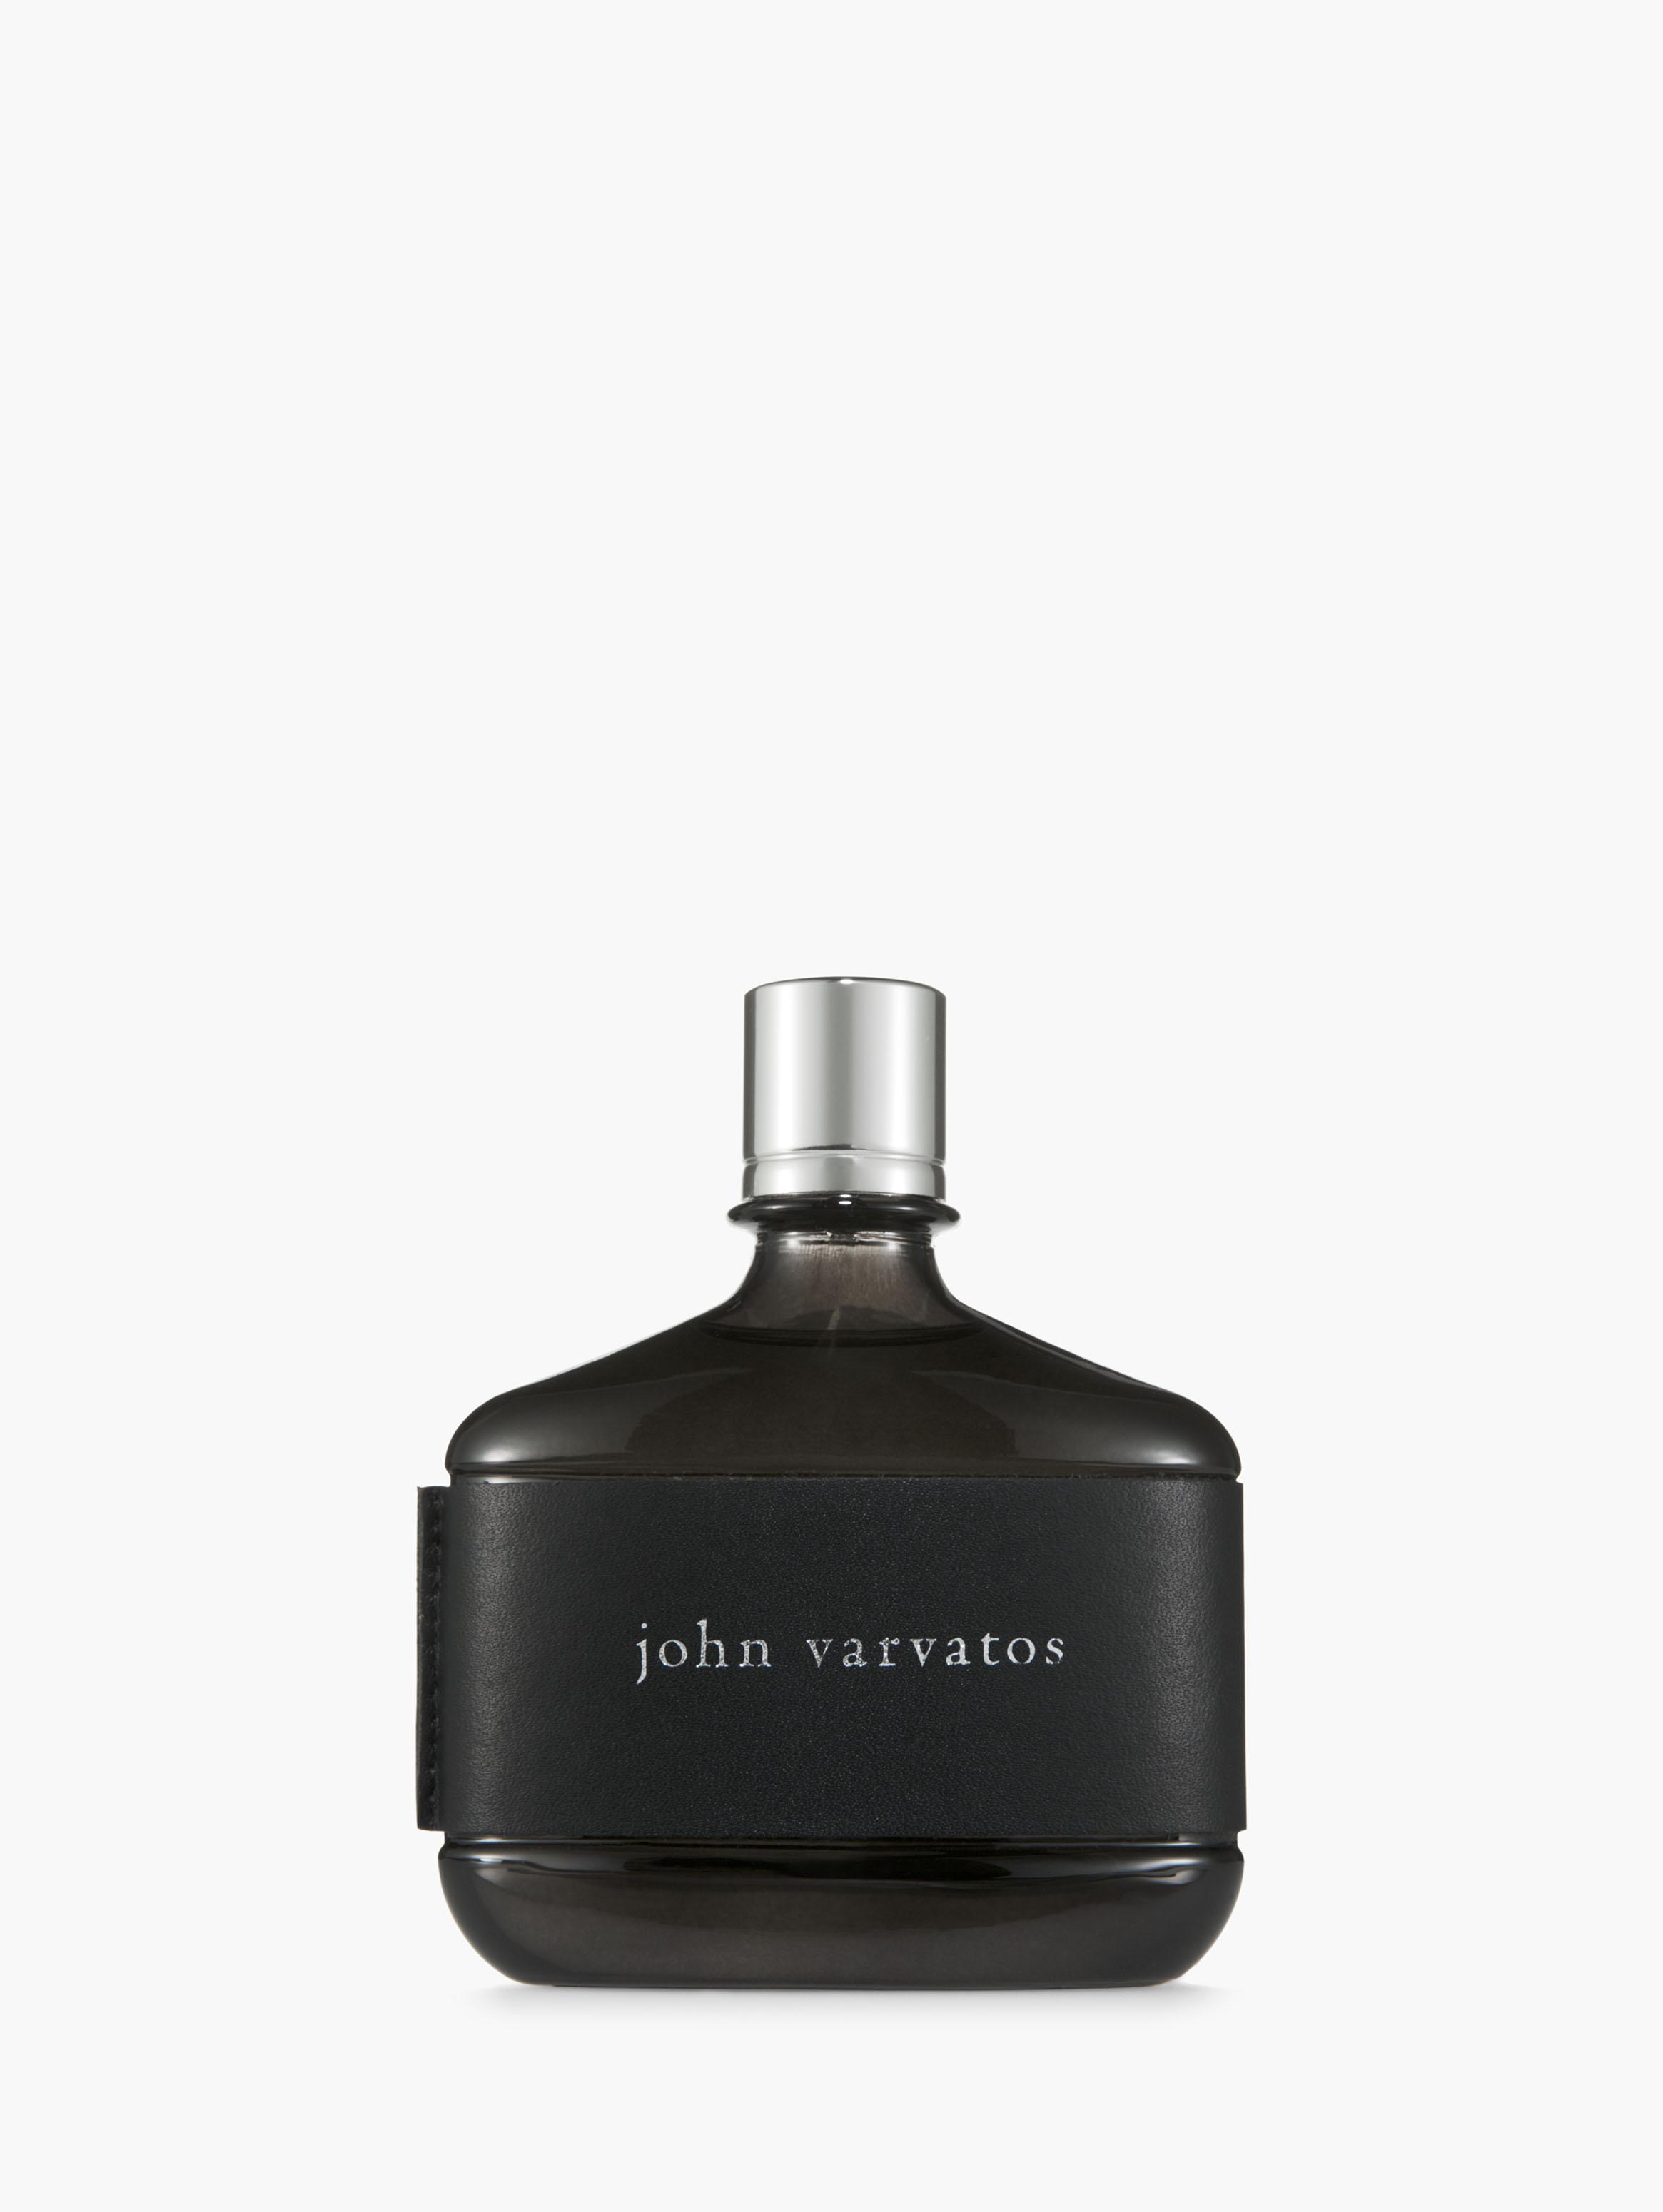 John Varvatos John Varvatos Fragrance 2.5 oz